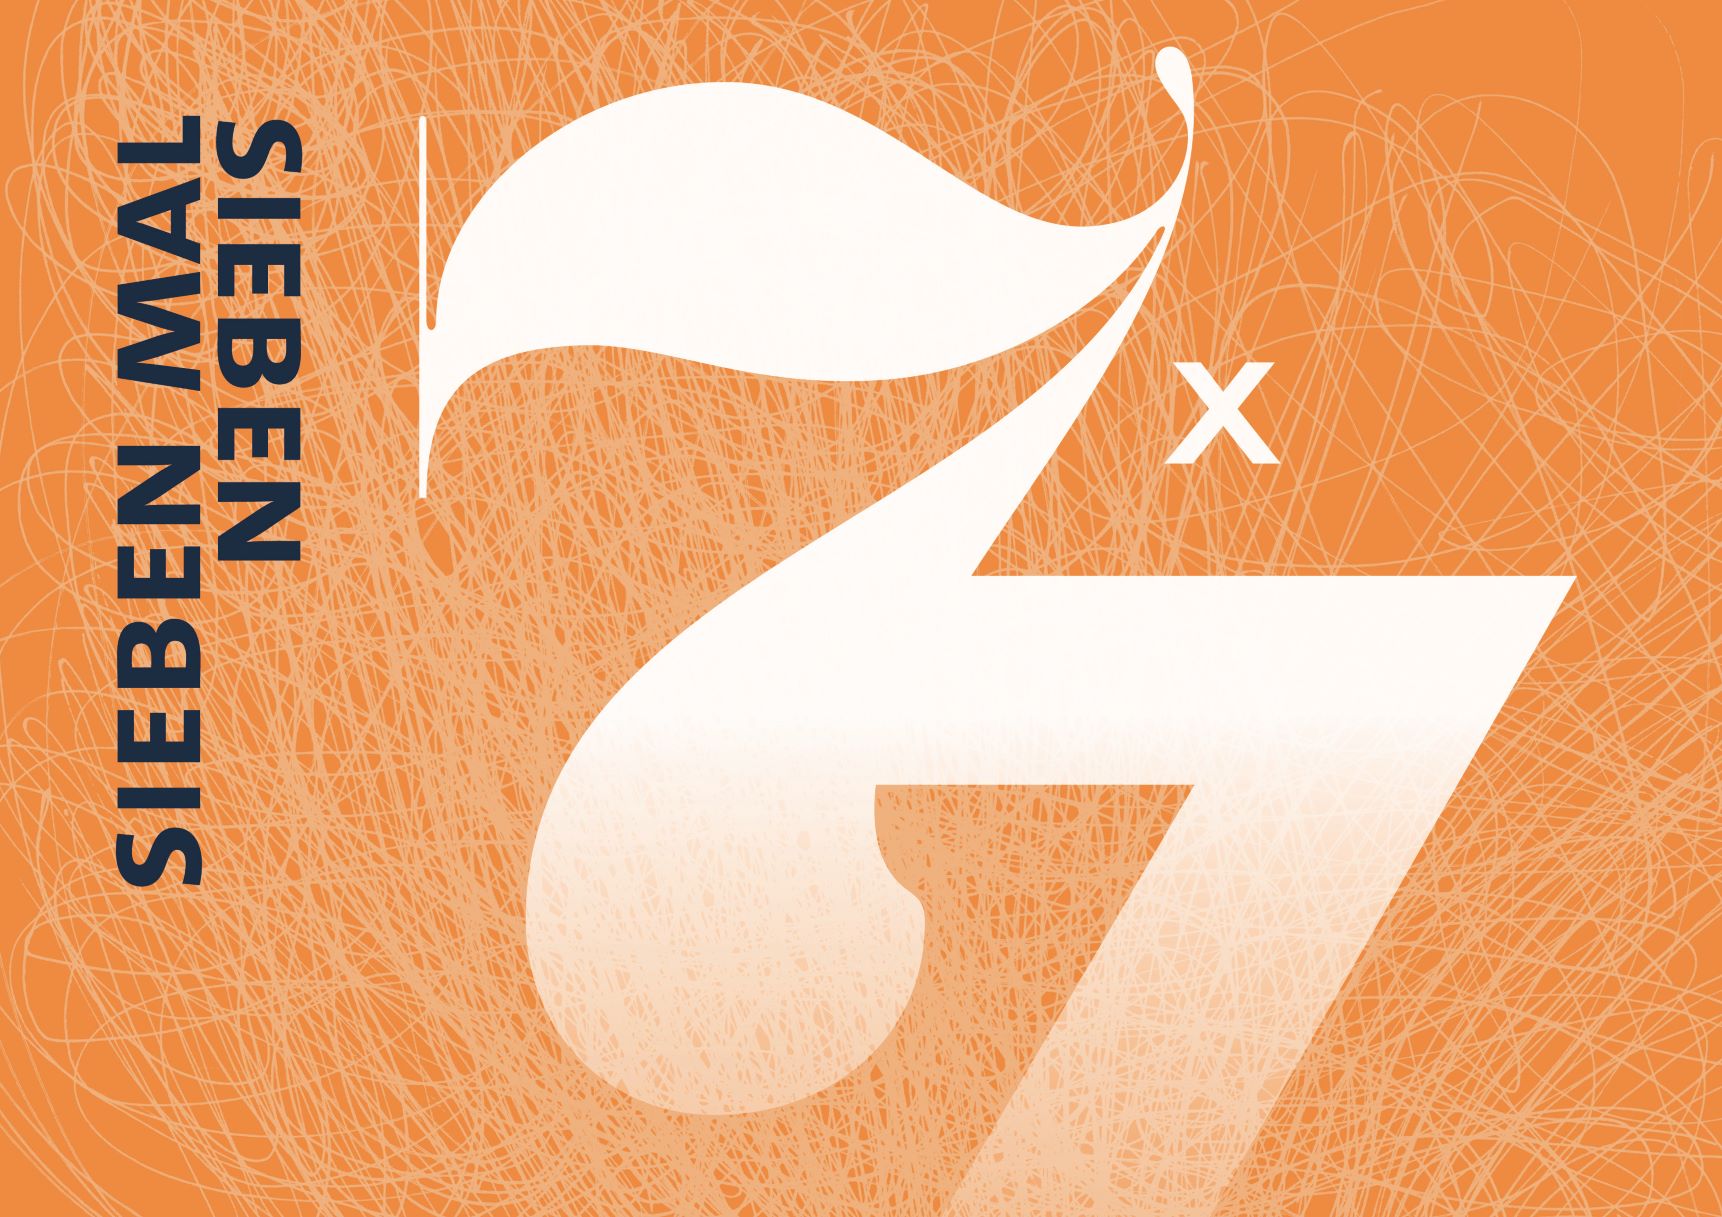 Logo der Veranstaltung 7x7. Weiße Zahlen auf orangenem Hintergrund.